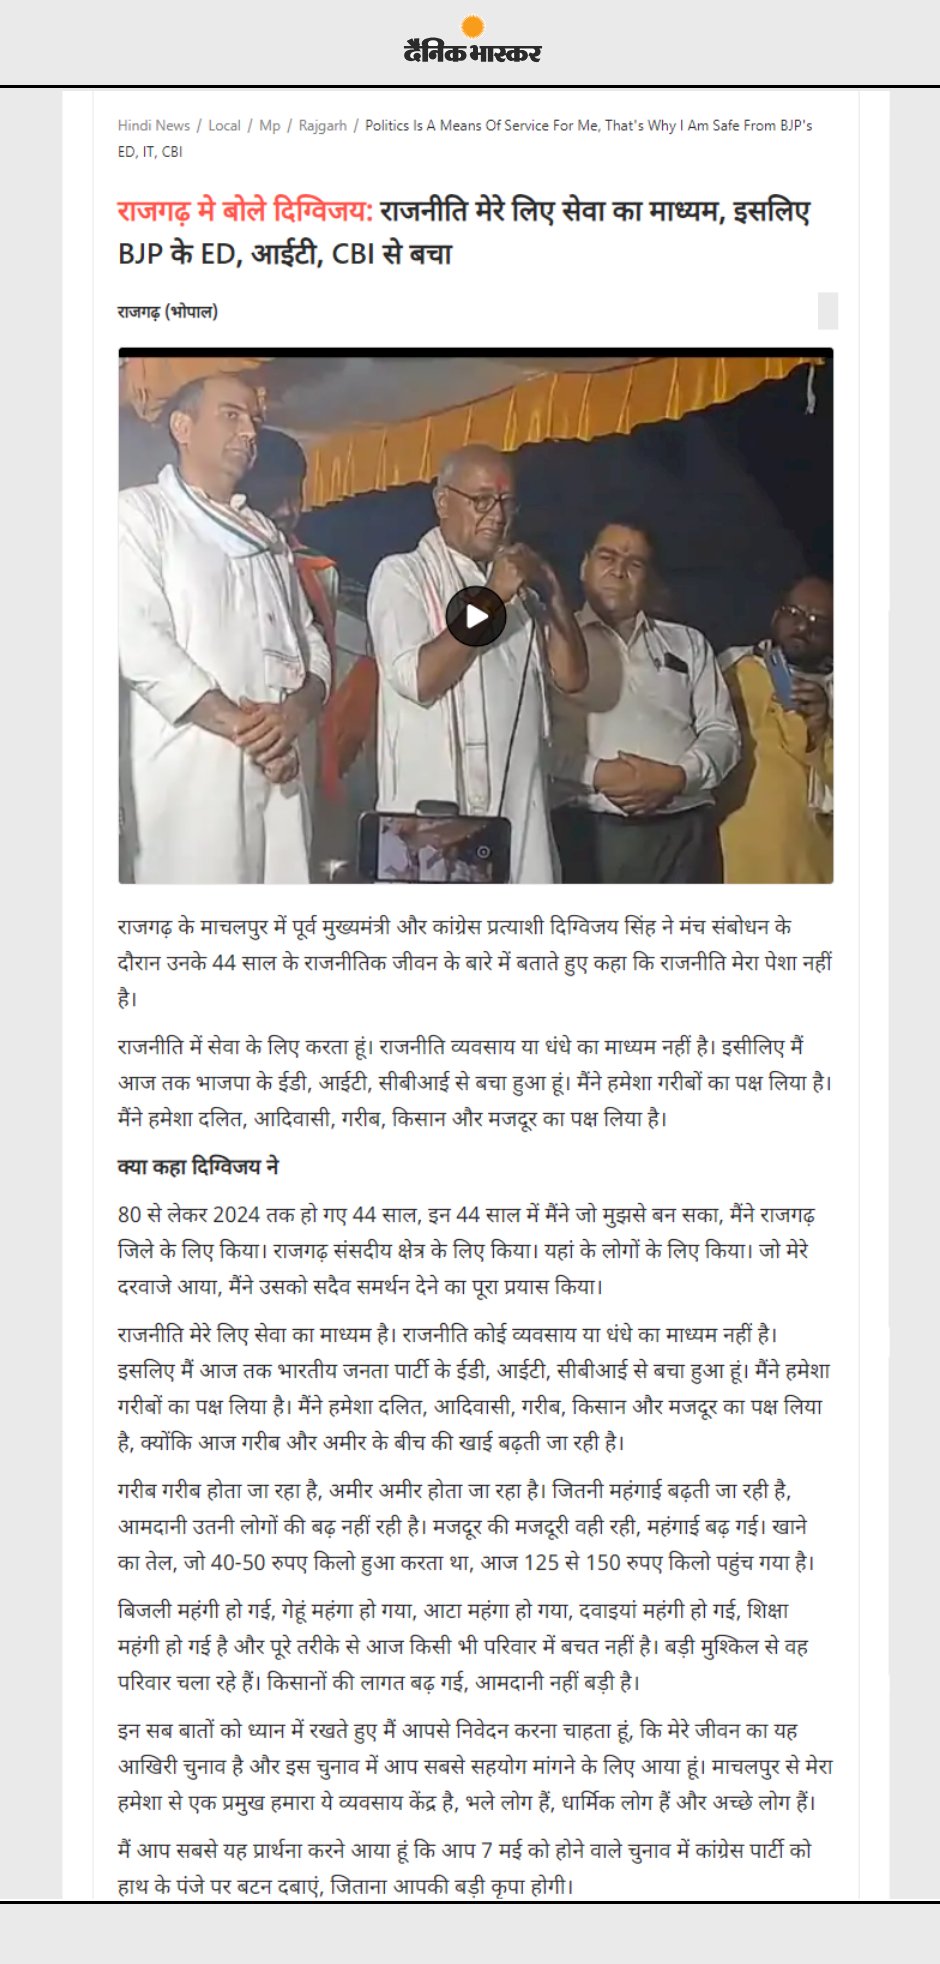 दिग्विजय सिंह बोले  राजनीति मेरे लिए सेवा का माध्यम है इसलिए BJP के ED आईटी CBI से बचा हू